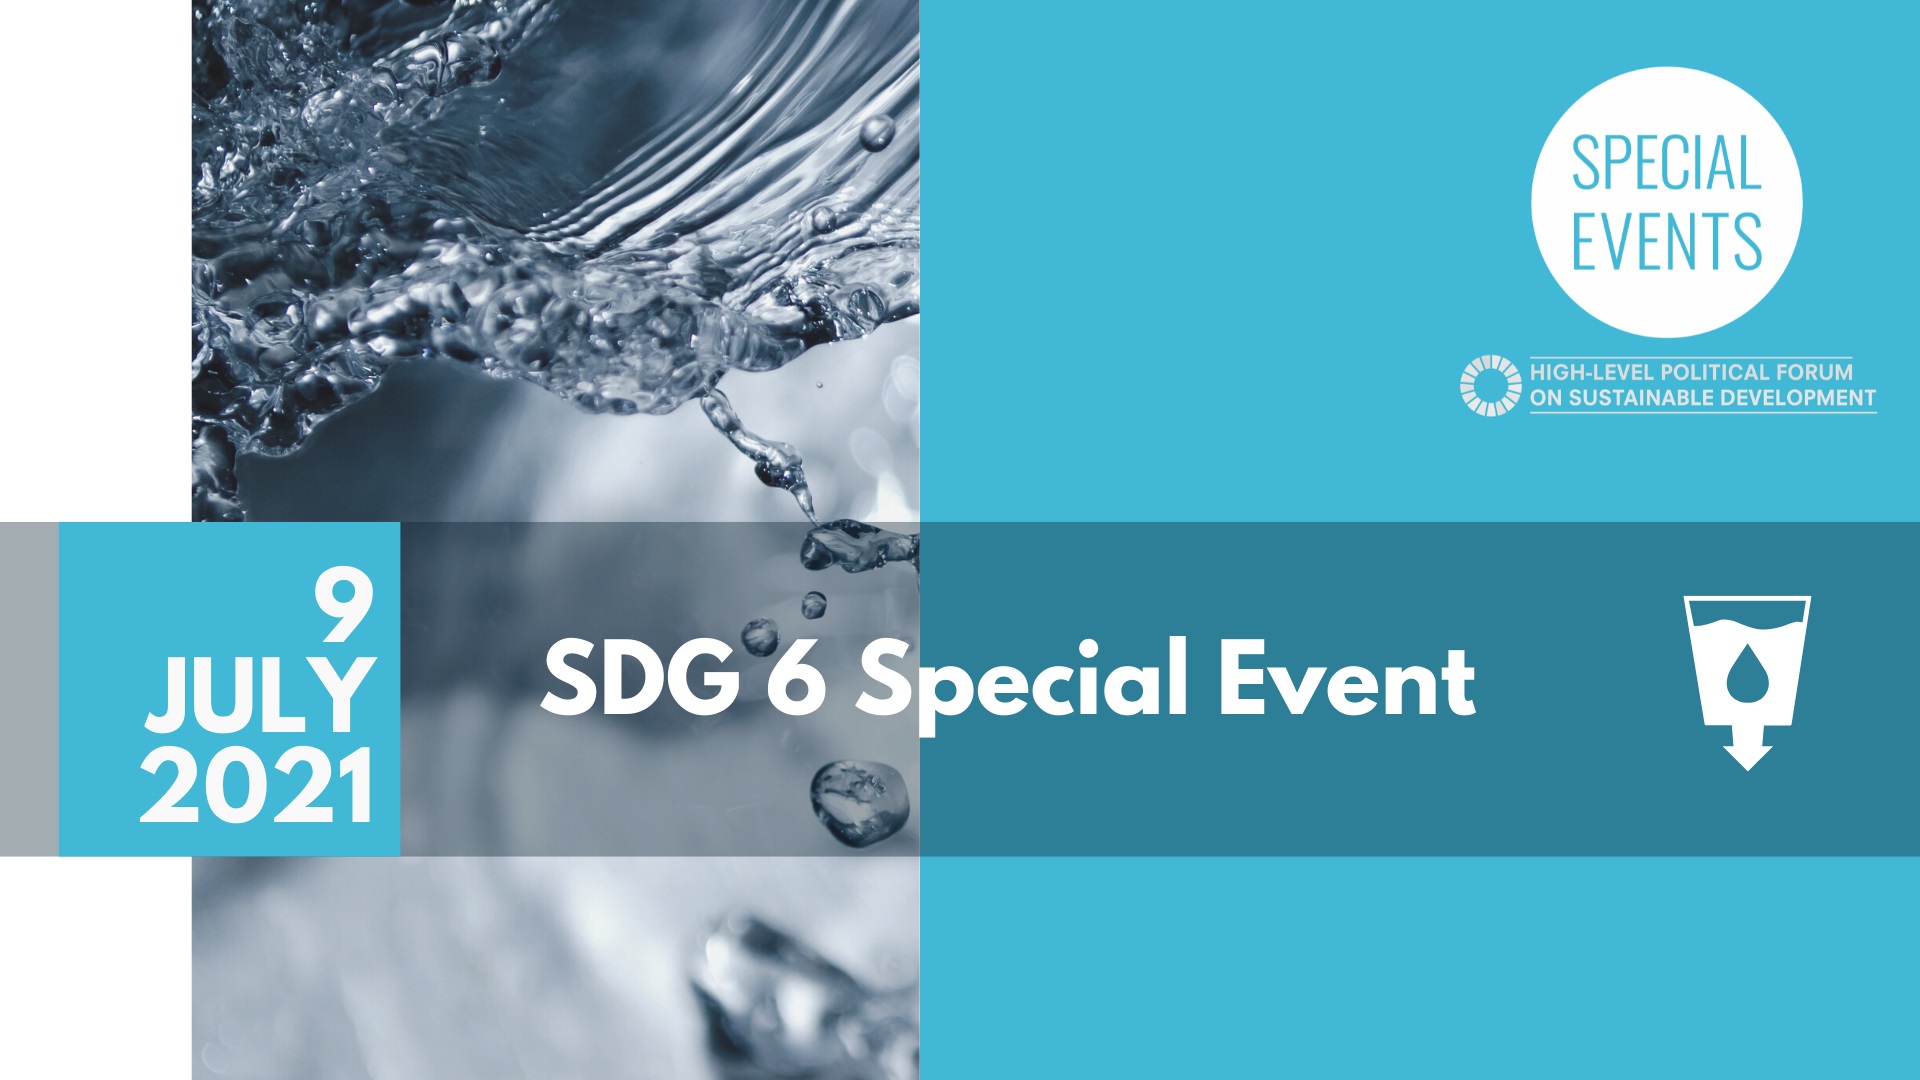 SDG 6 Special Event